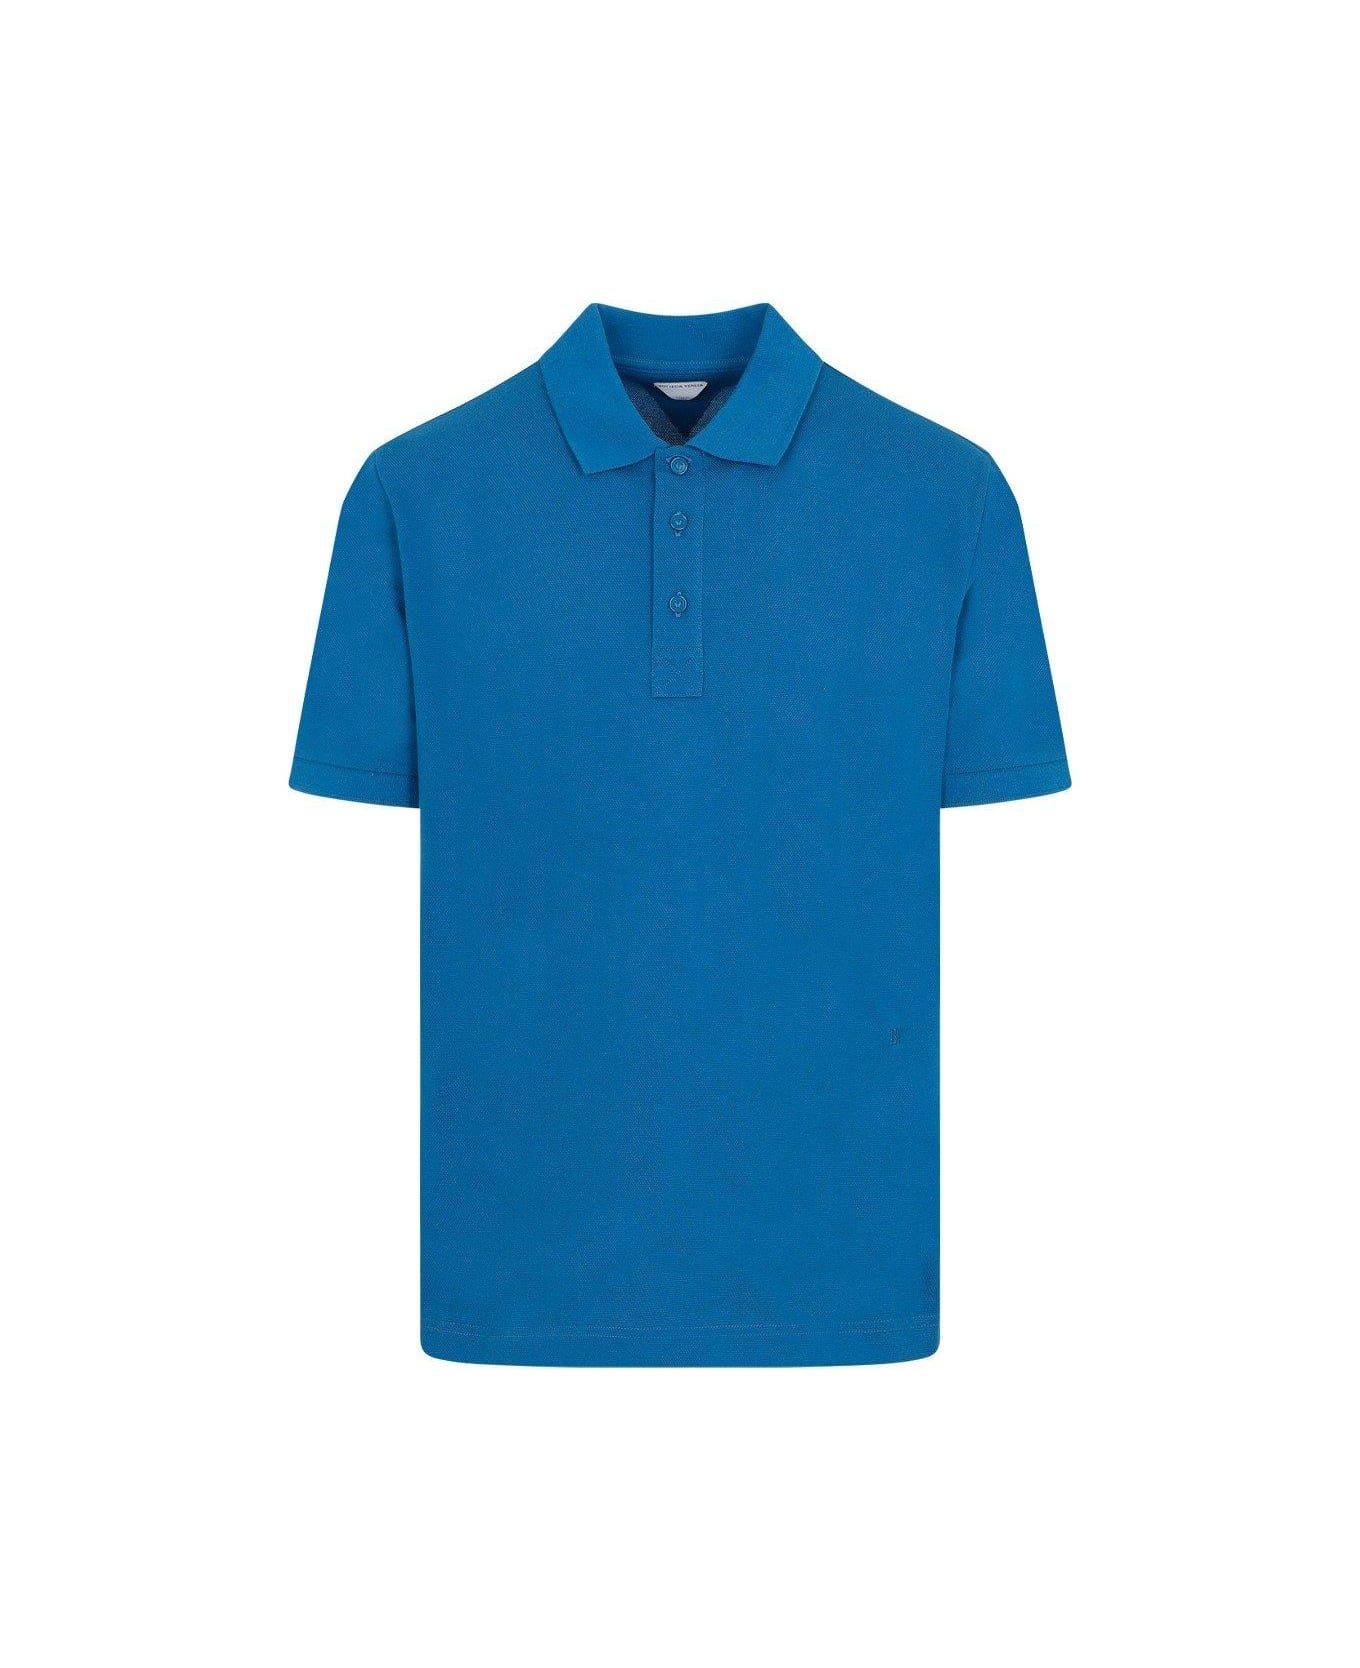 Bottega Veneta Short-sleeved Polo Shirt - PACIFIC